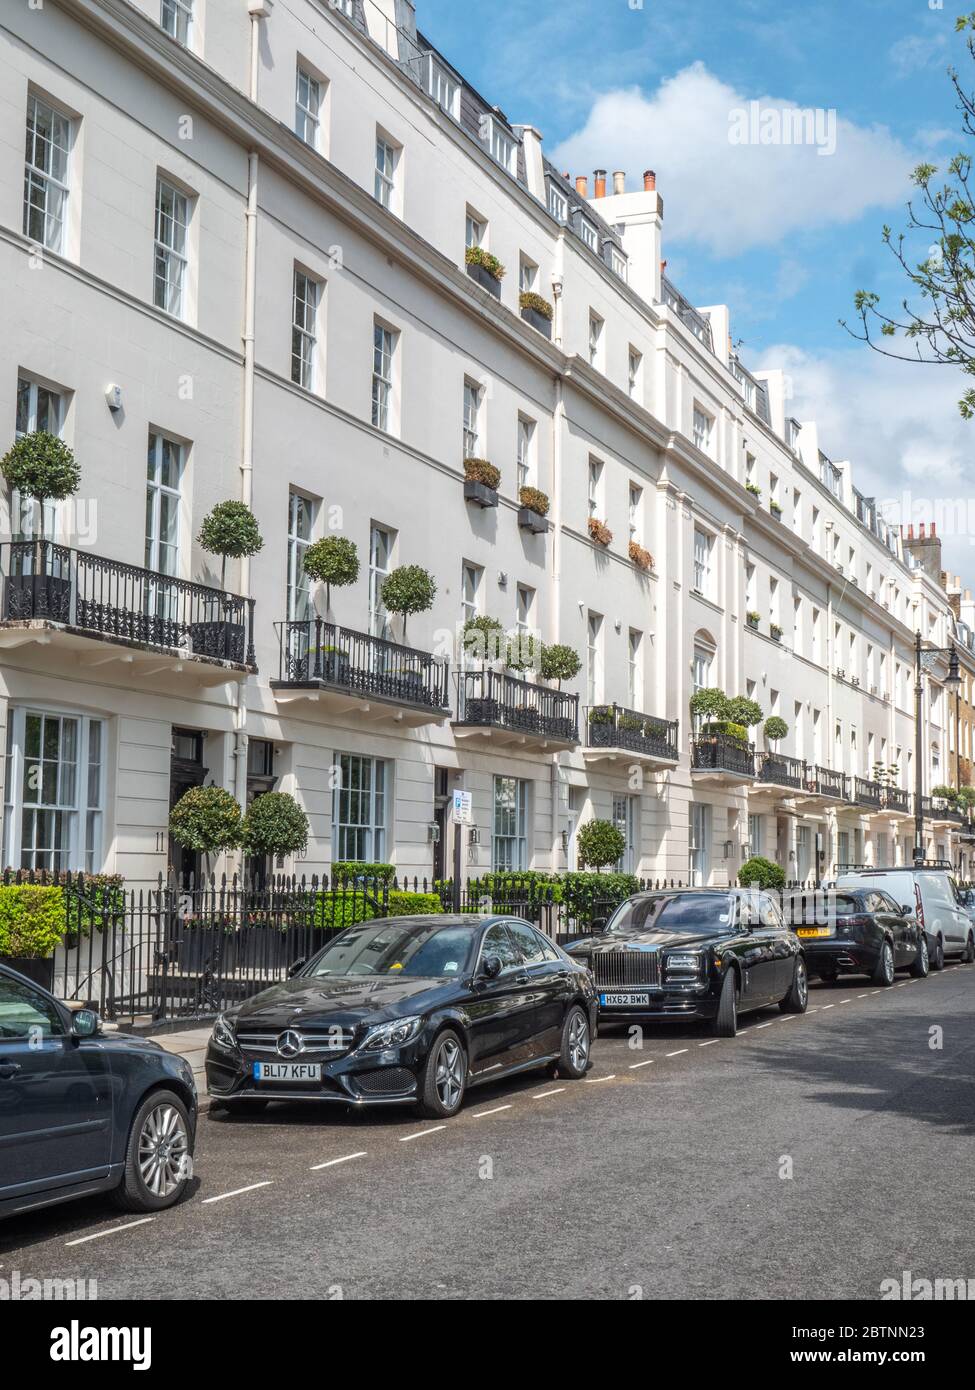 Belgravia, Londres, Angleterre. Une scène de rue de l'architecture géorgienne et des voitures de luxe typiques du quartier exclusif de Londres Ouest. Banque D'Images